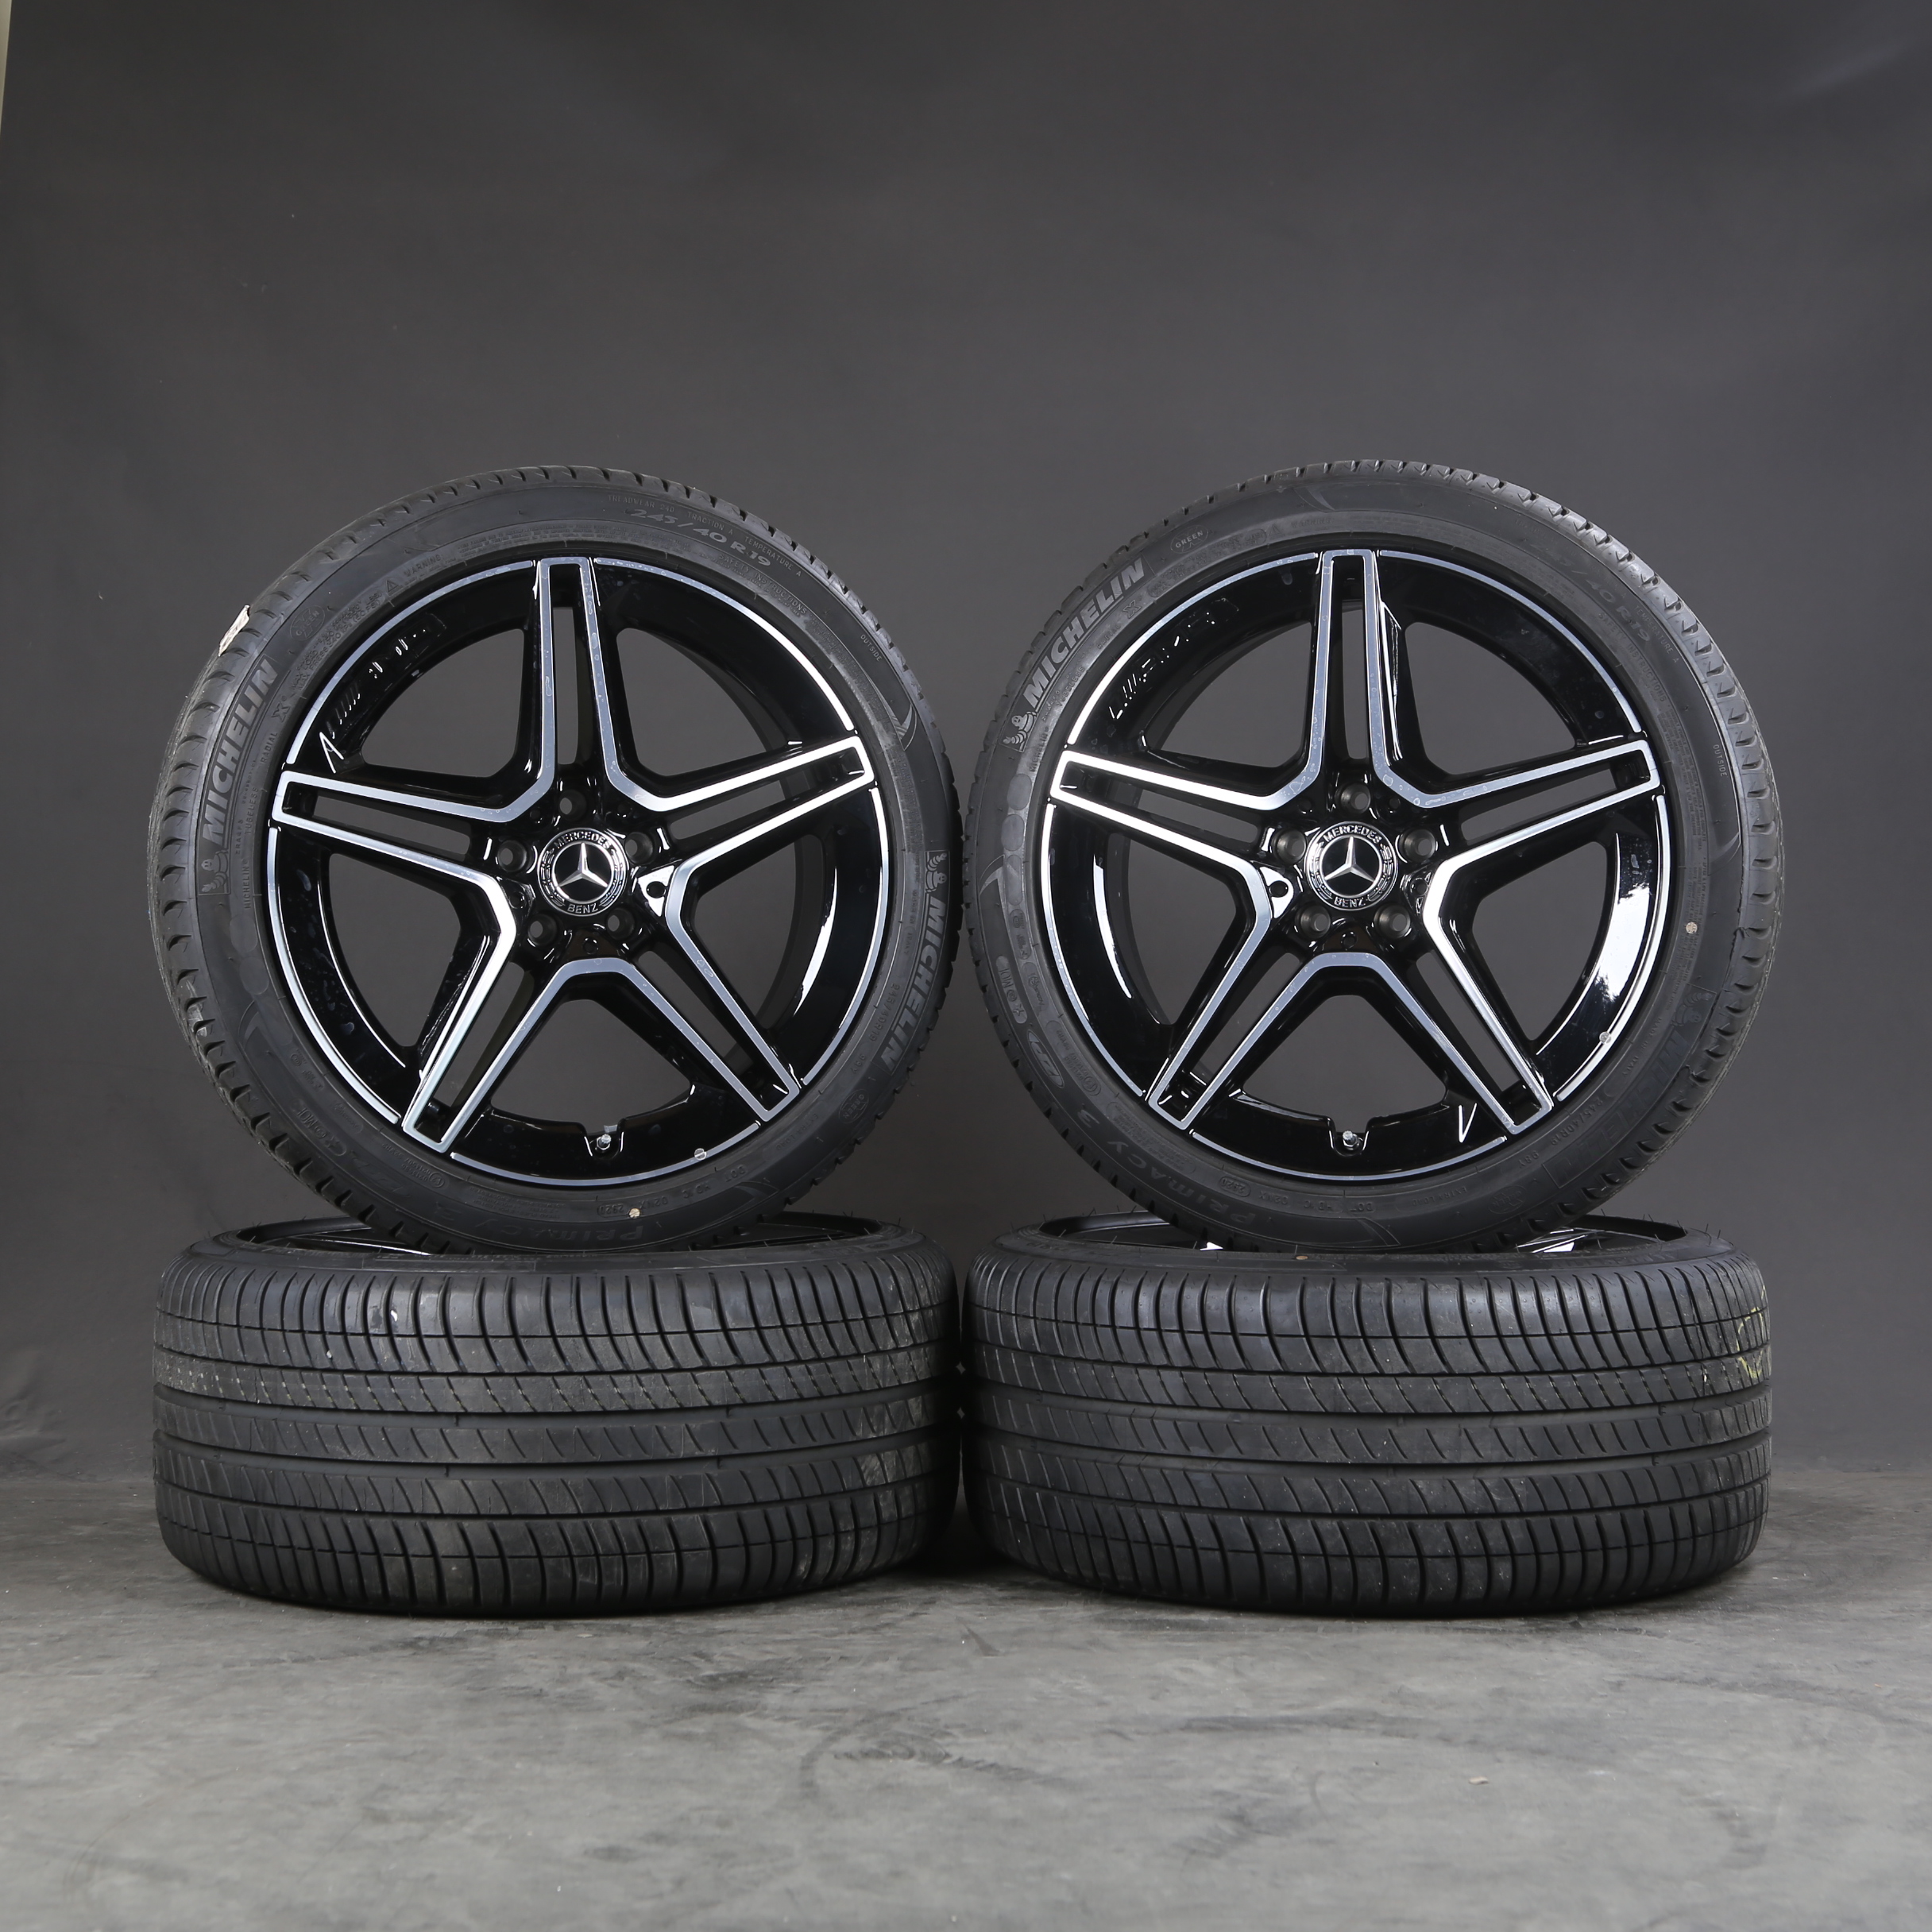 Llantas de verano de 19 pulgadas originales Mercedes CLS AMG C257 A2574011500 Neumáticos de verano